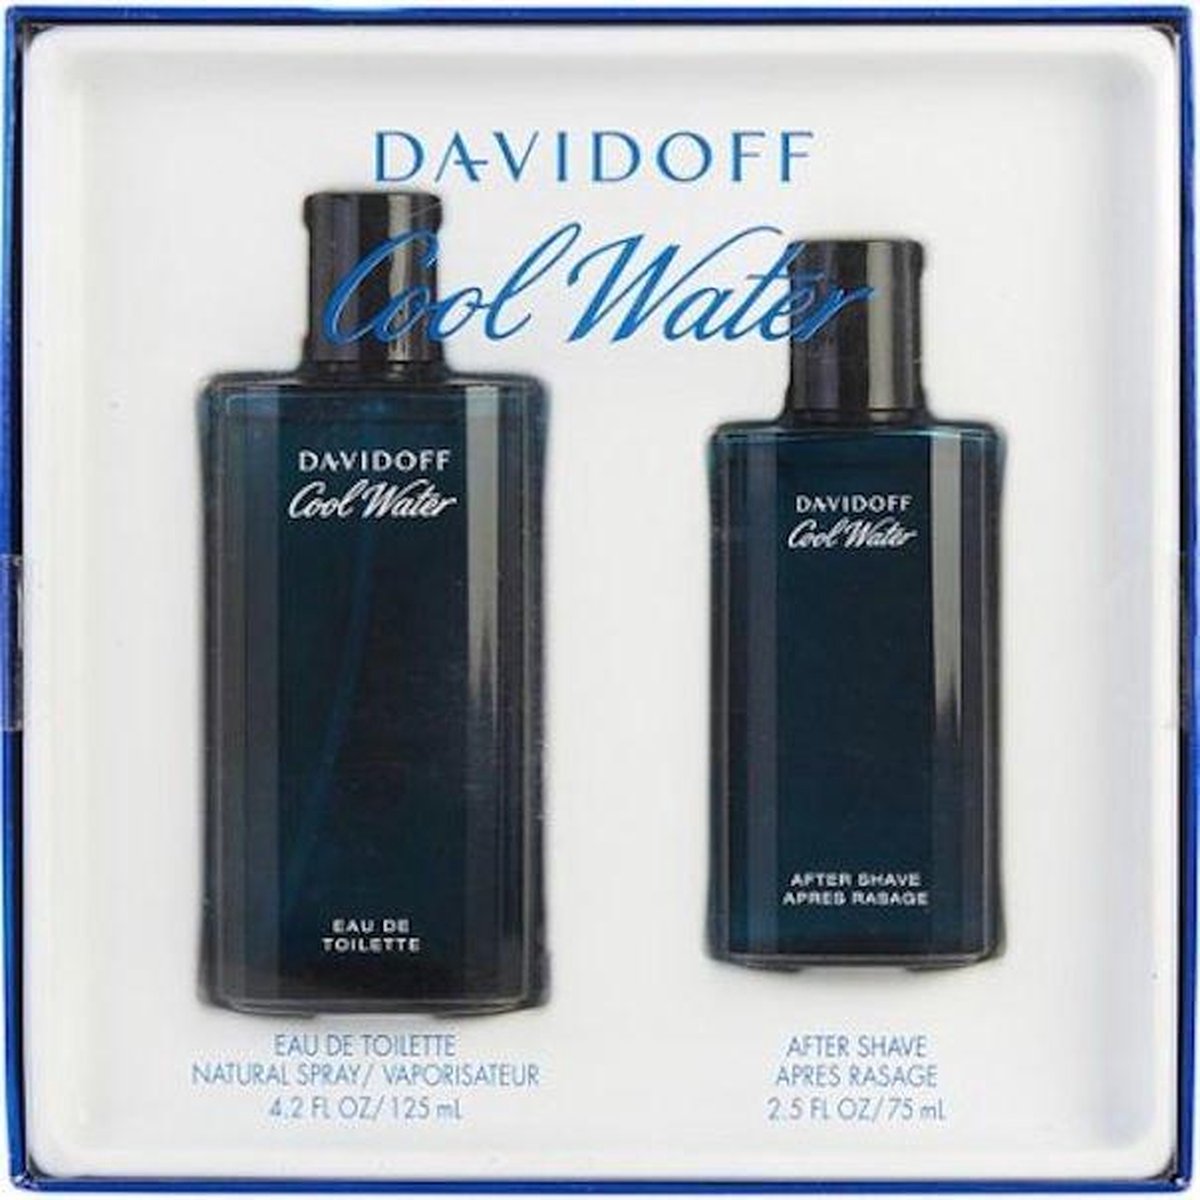 Davidoff Cool Water Gift Set